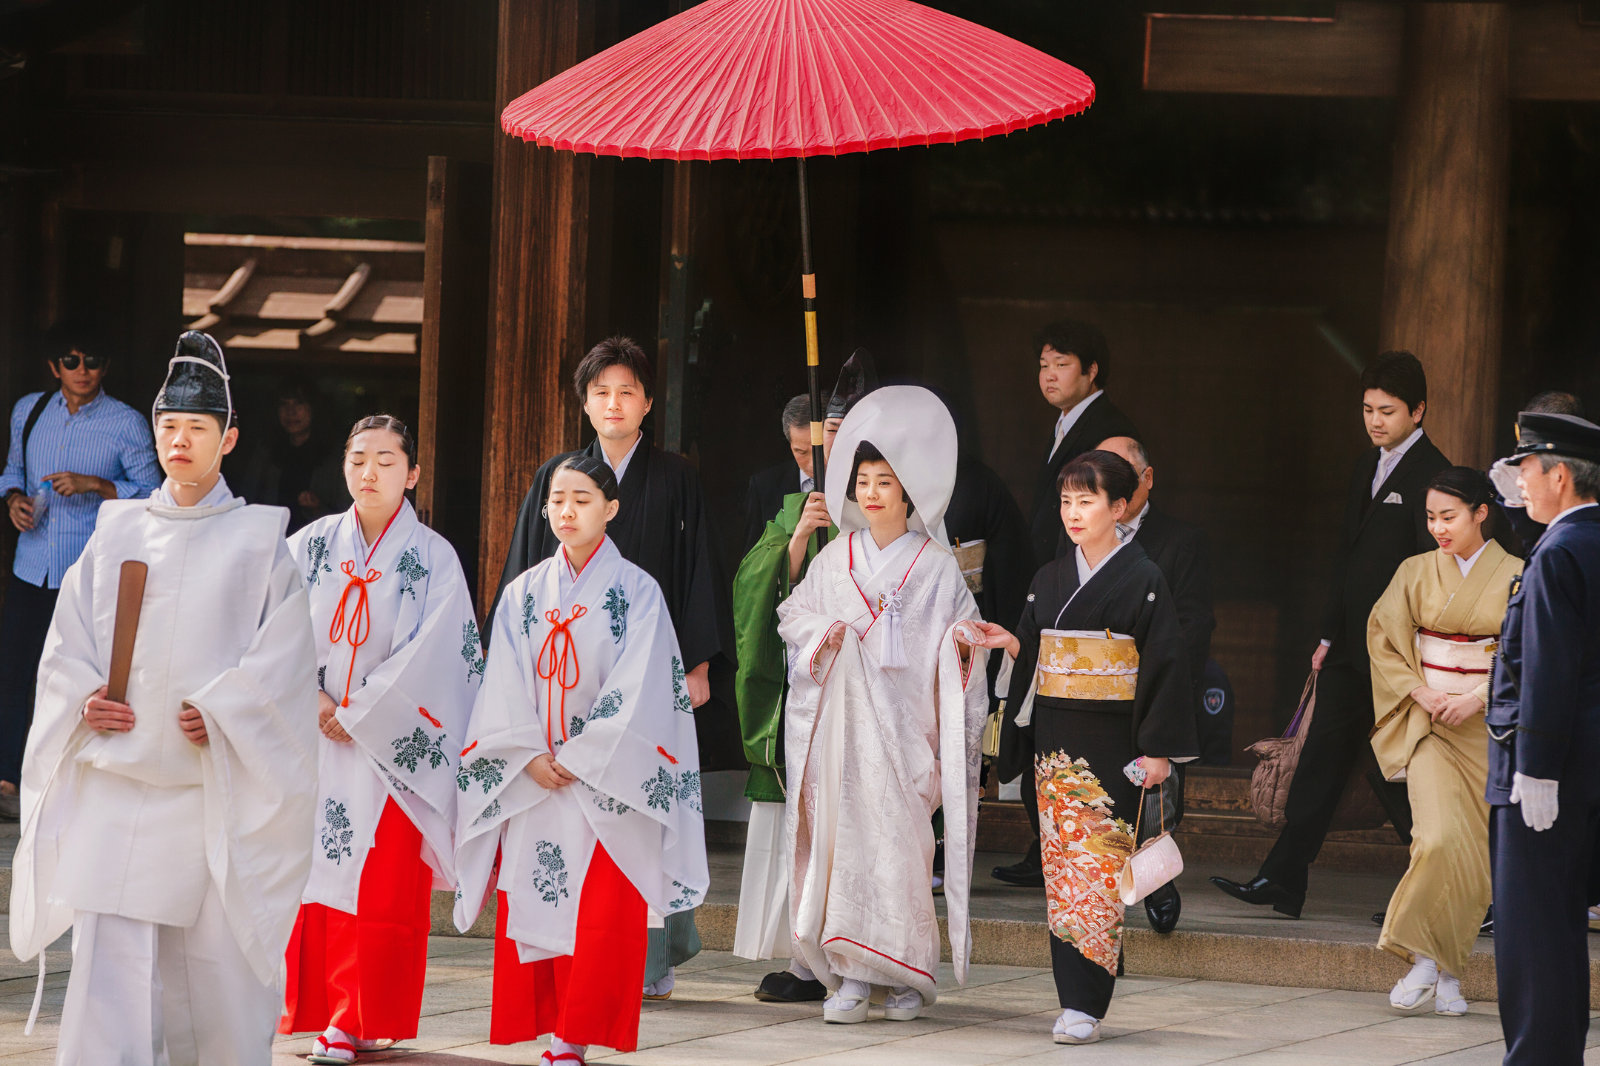 京都八坂神社での結婚式のプランニングガイド